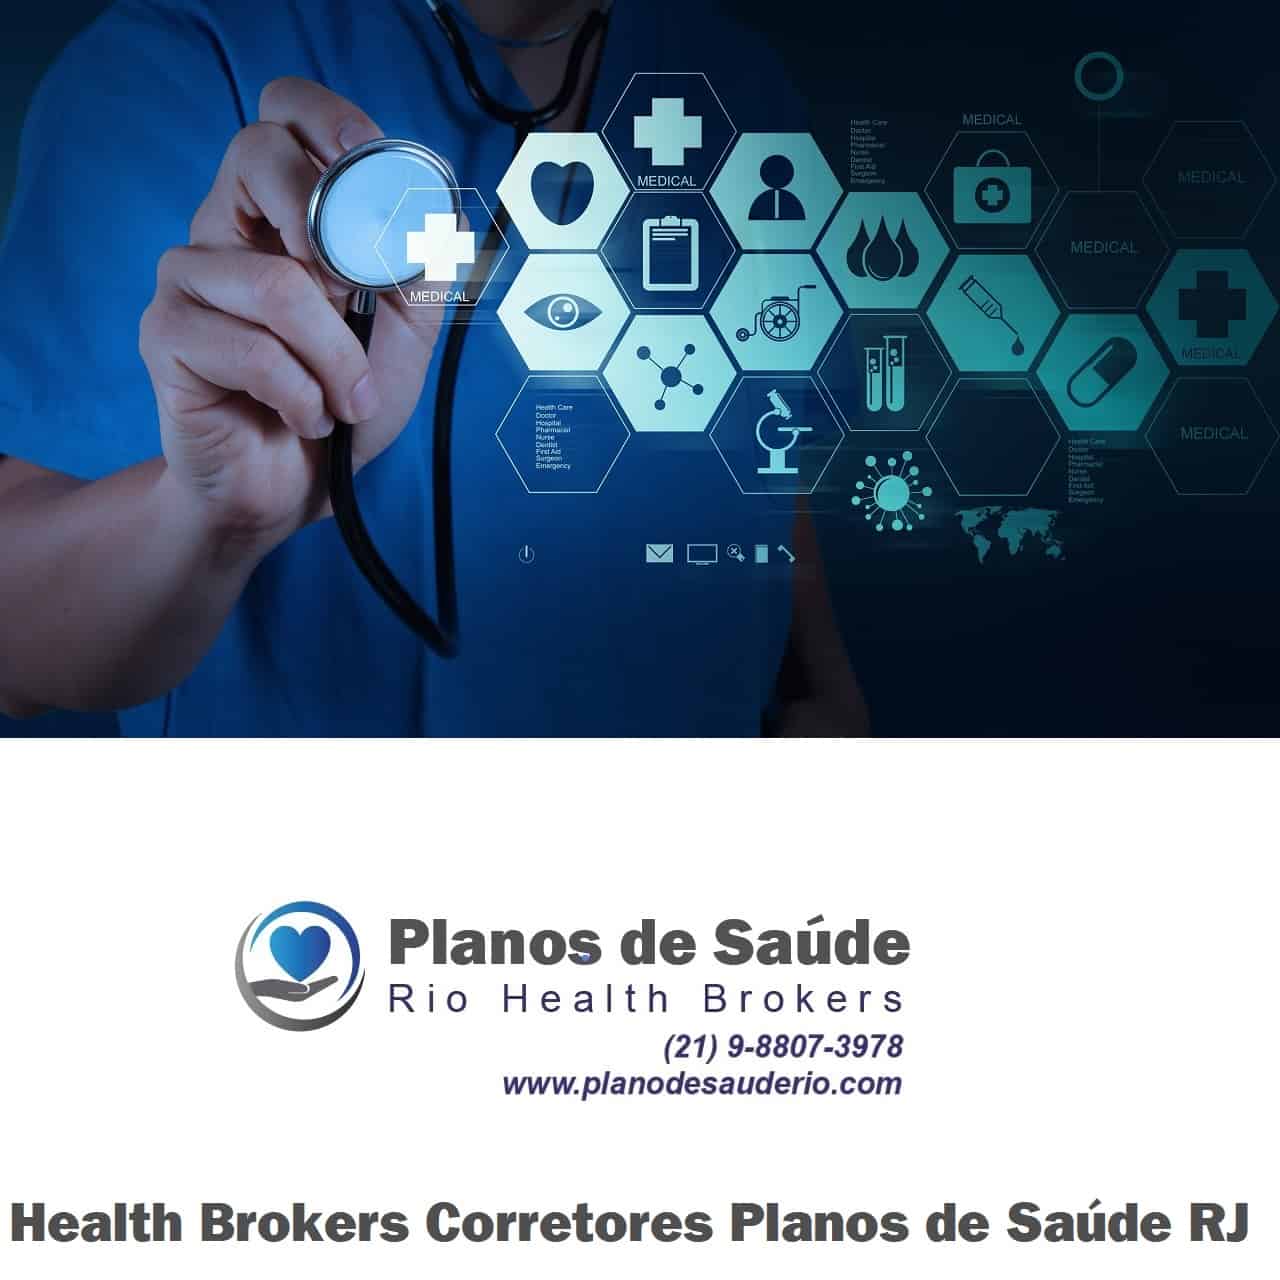 Health-Brokers-Corretores-Planos-de-Saude-RJ